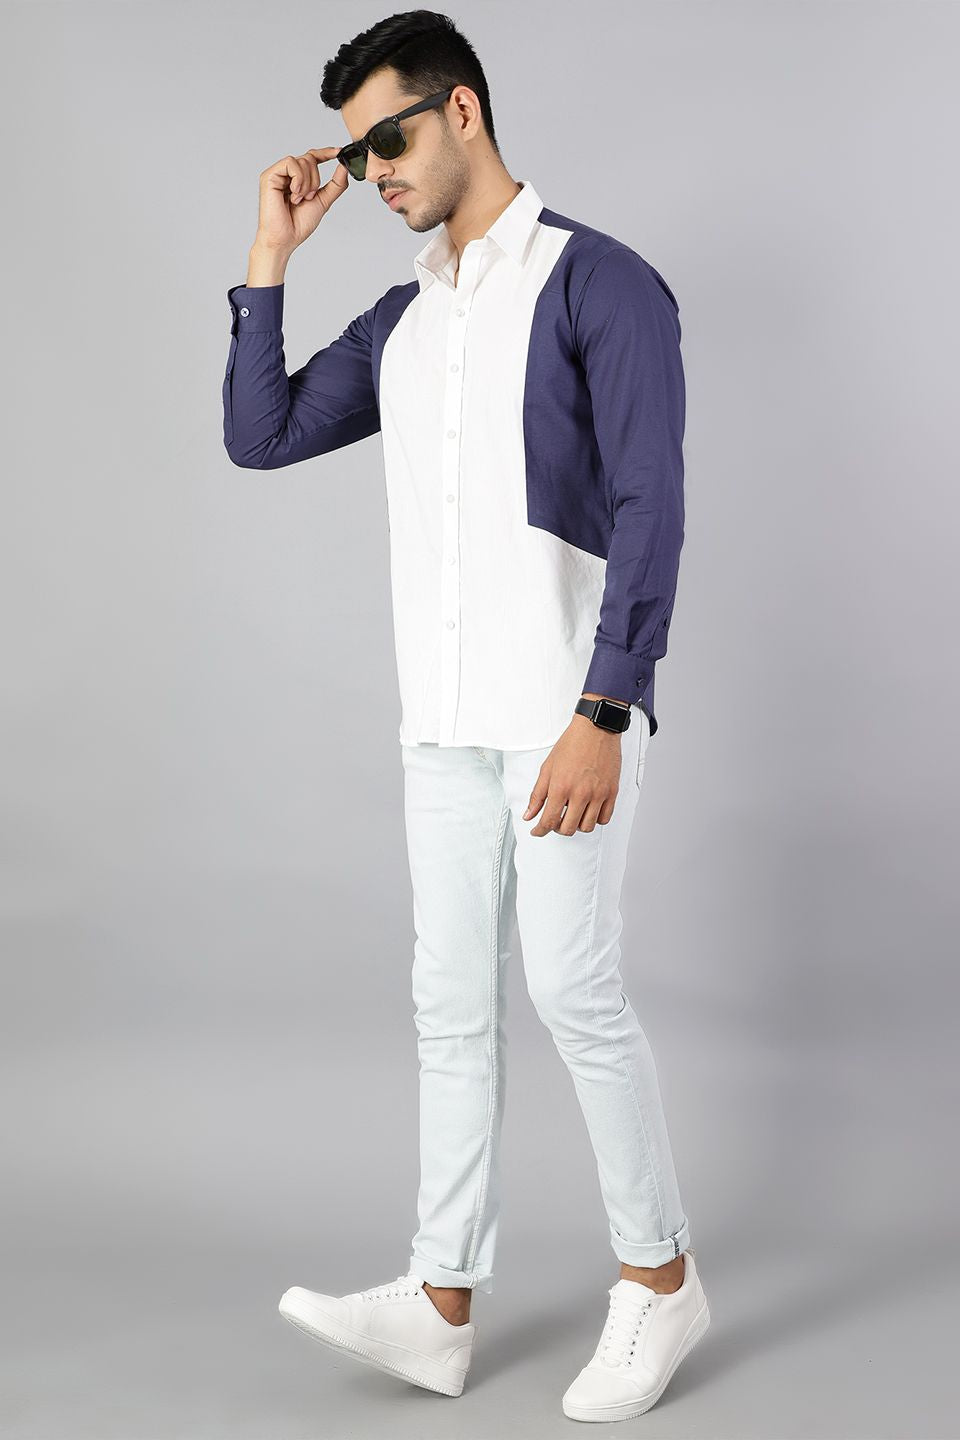 100% Premium Cotton White & Blue Shirt